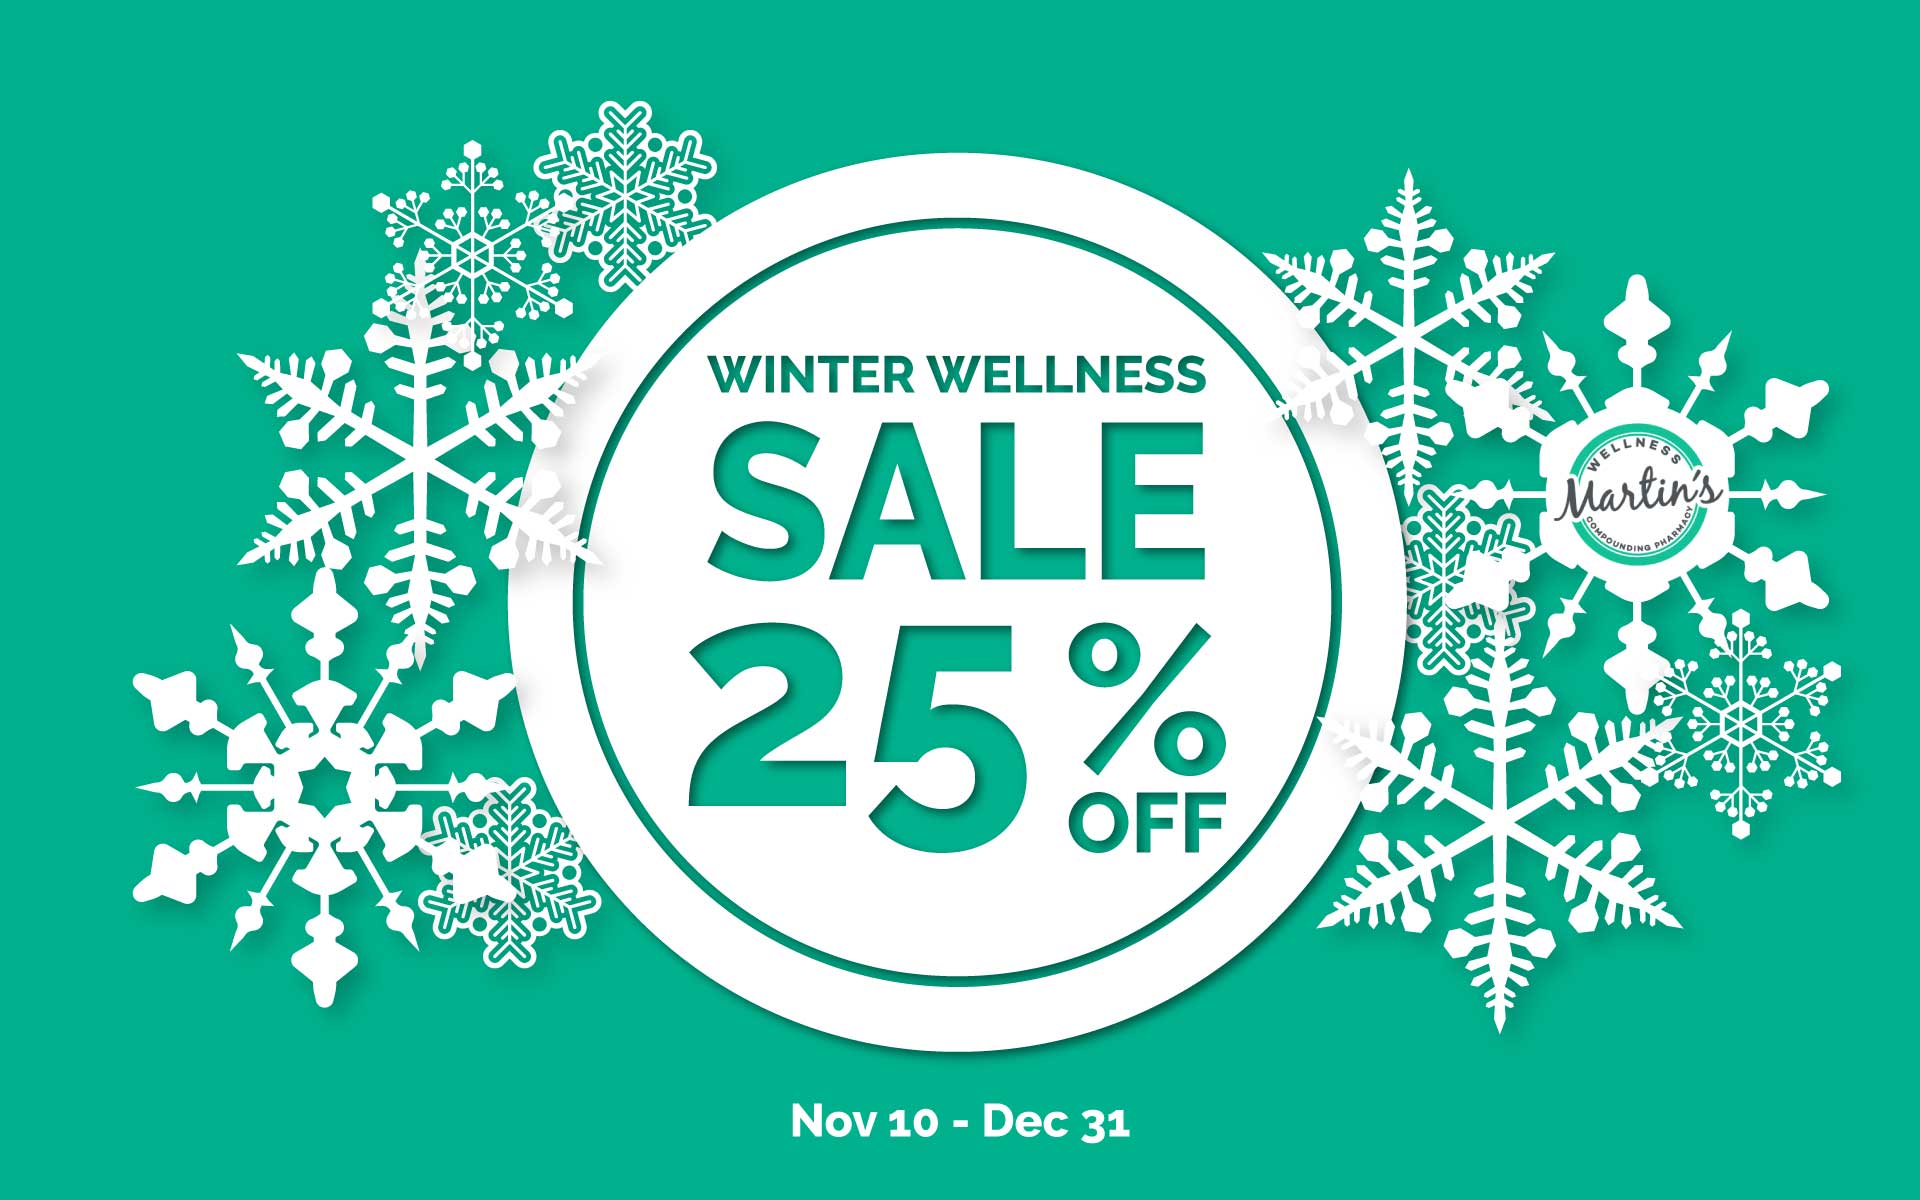 Winter Wellness Sale at Martin's Wellness